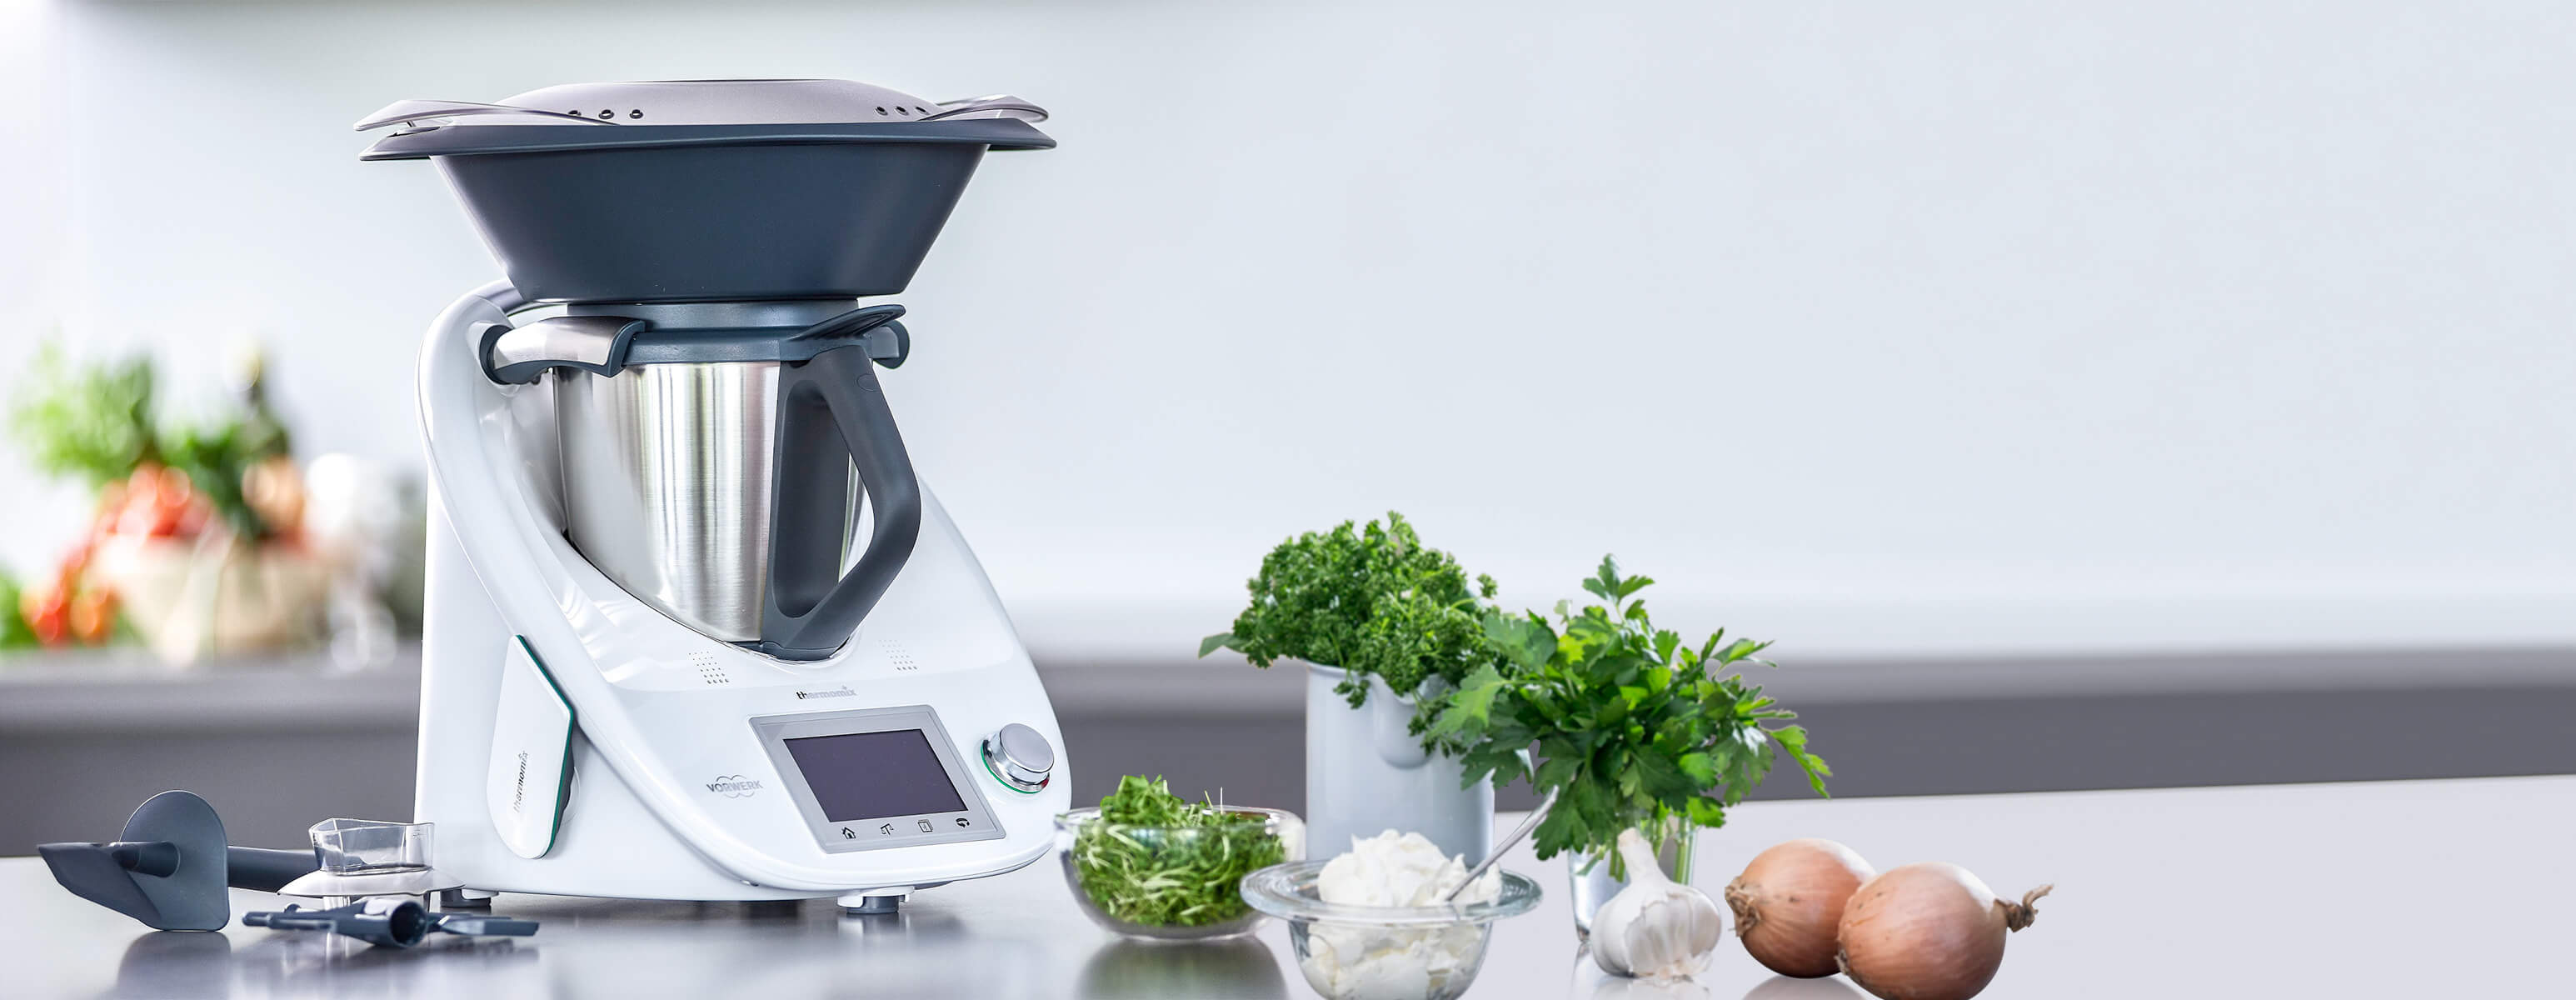 Nueva thermomix tm6 como funciona cocinar robot de cocina recetas de cocina  delicioso